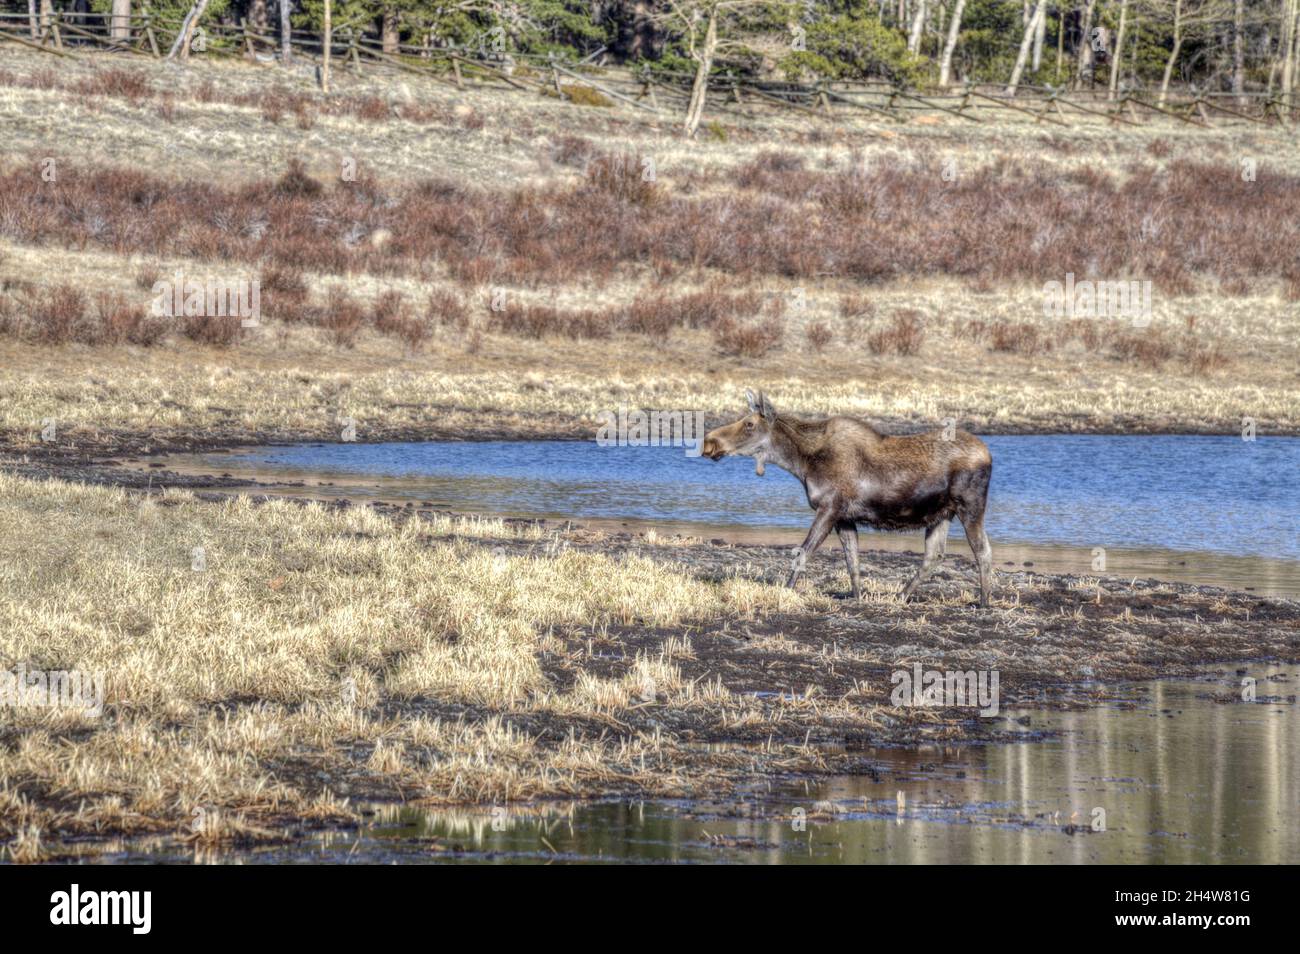 A Shiras Moose que se aleja del borde de un lago de montaña. Foto de stock